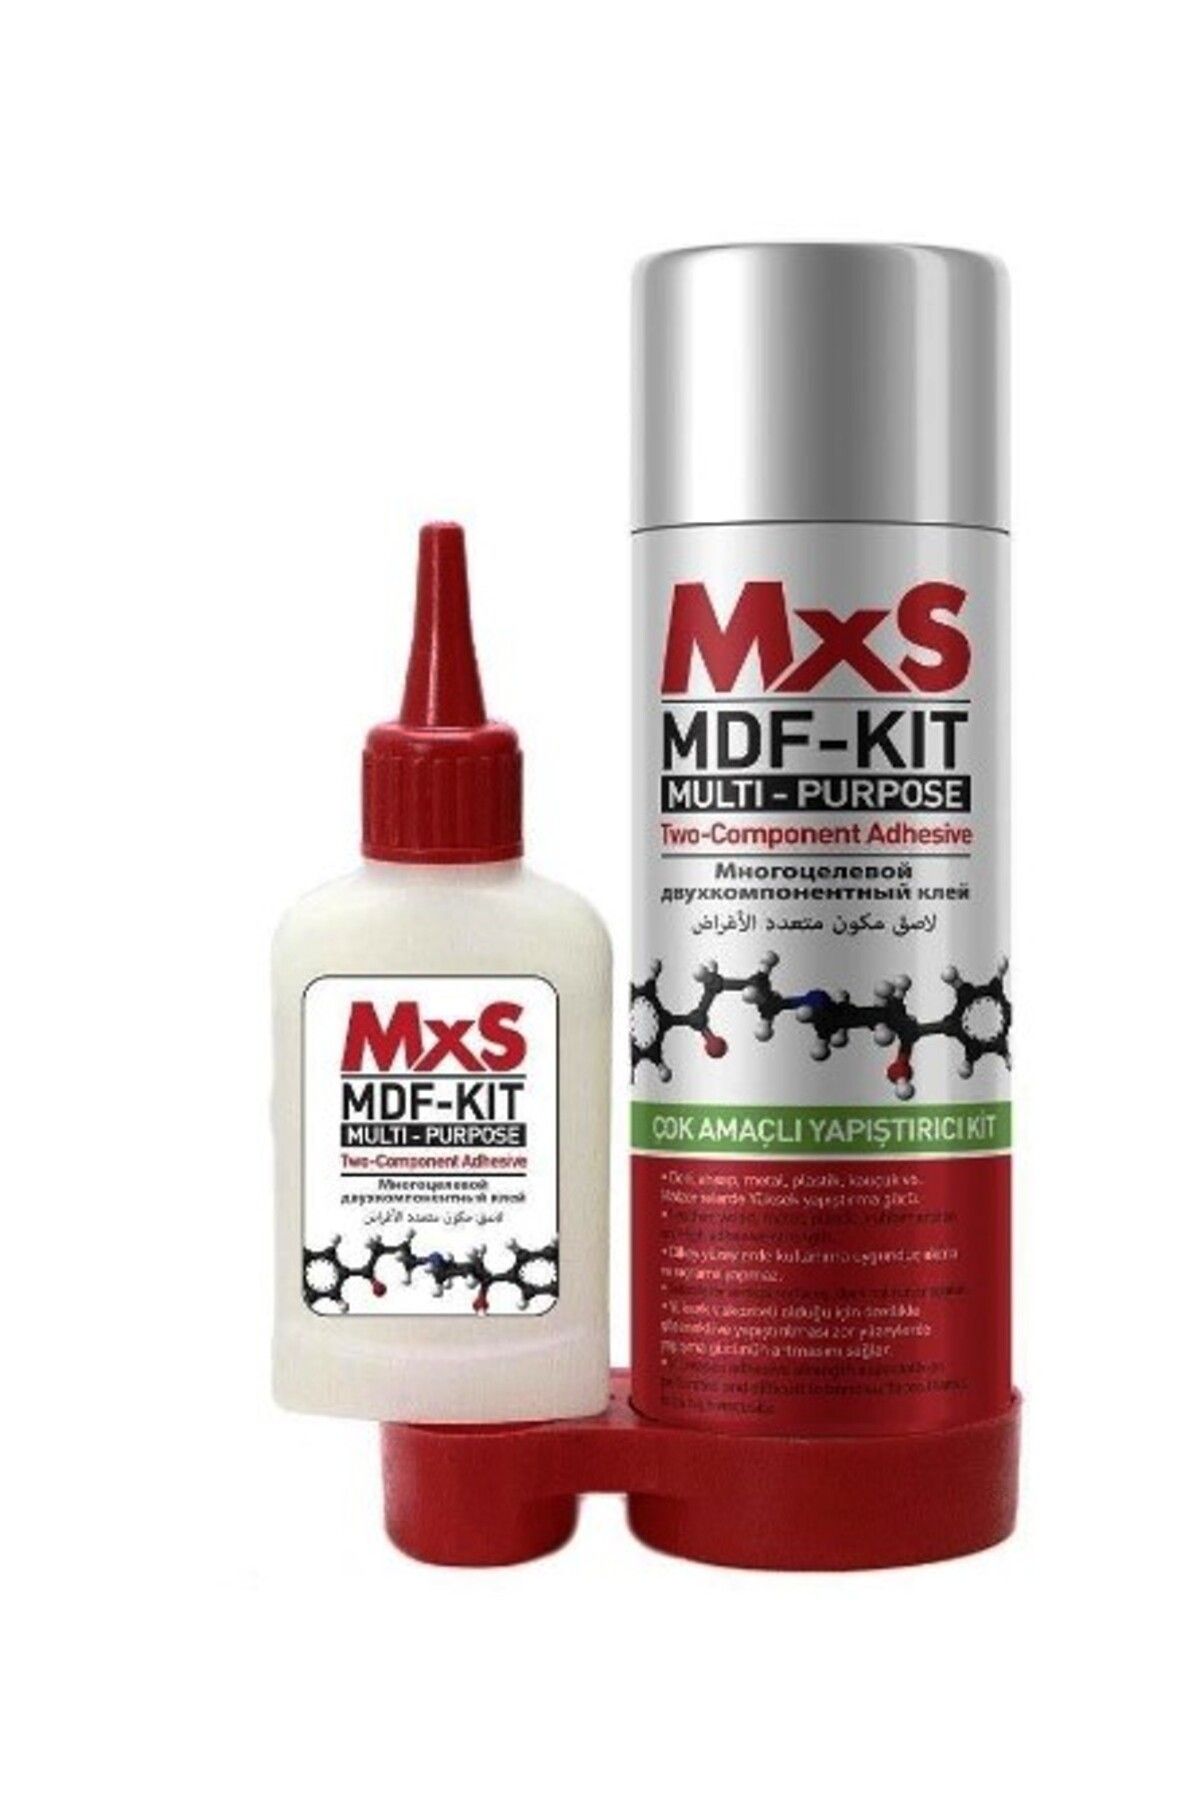 MxS 400 Ml Çok Amaçlı Yapıştırıcı MDF Kit